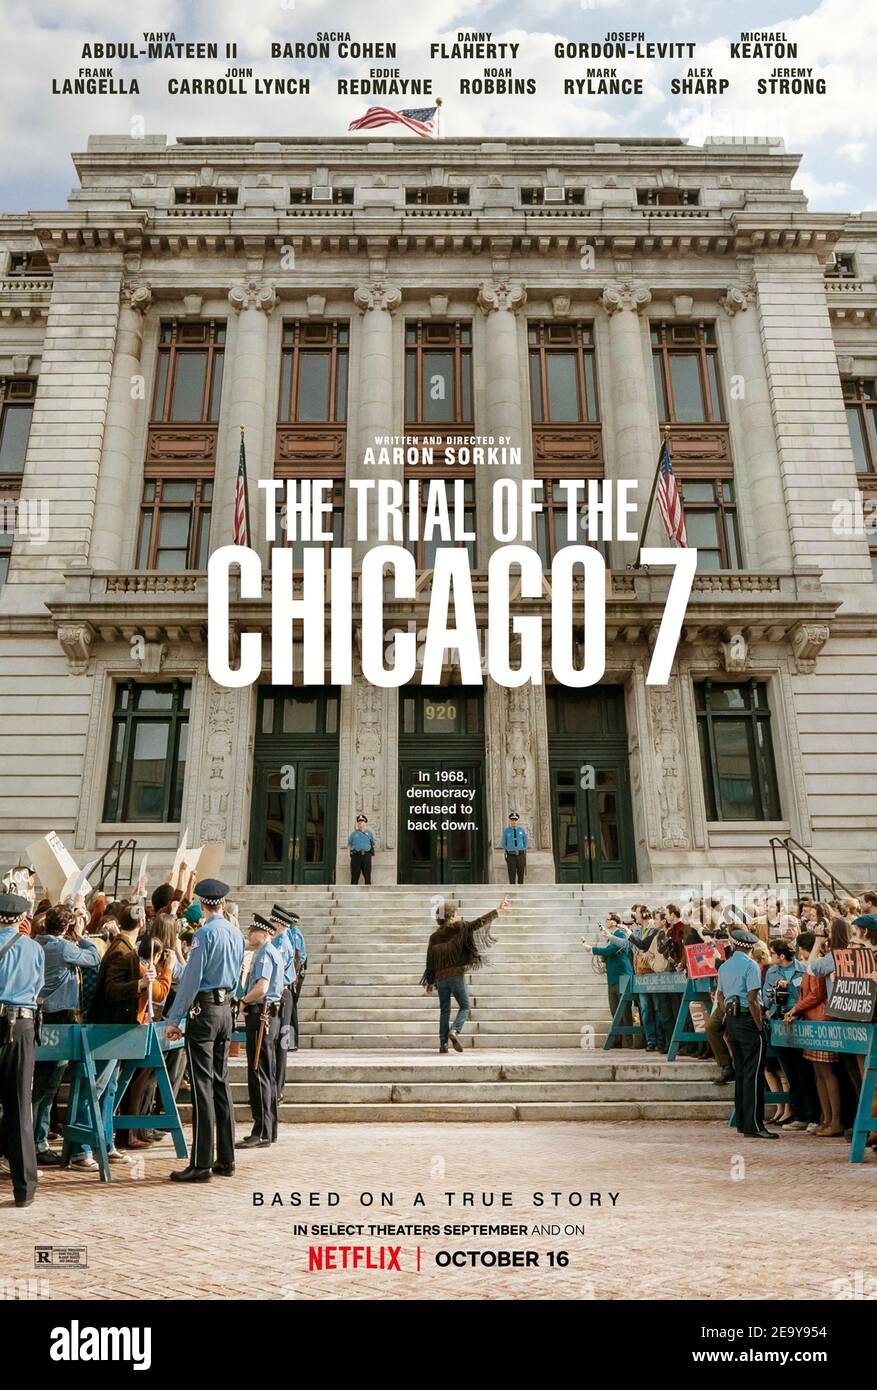 The Trial of the Chicago 7 (2020) unter der Regie von Aaron Sorkin mit Eddie Redmayne, Alex Sharp und Sacha Baron Cohen. Die Geschichte von 7 Personen, die vor Gericht gestellt wurden, stammt aus verschiedenen Anklagepunkten im Zusammenhang mit dem Aufstand bei der Democratic National Convention 1968 in Chicago, Illinois. Stockfoto